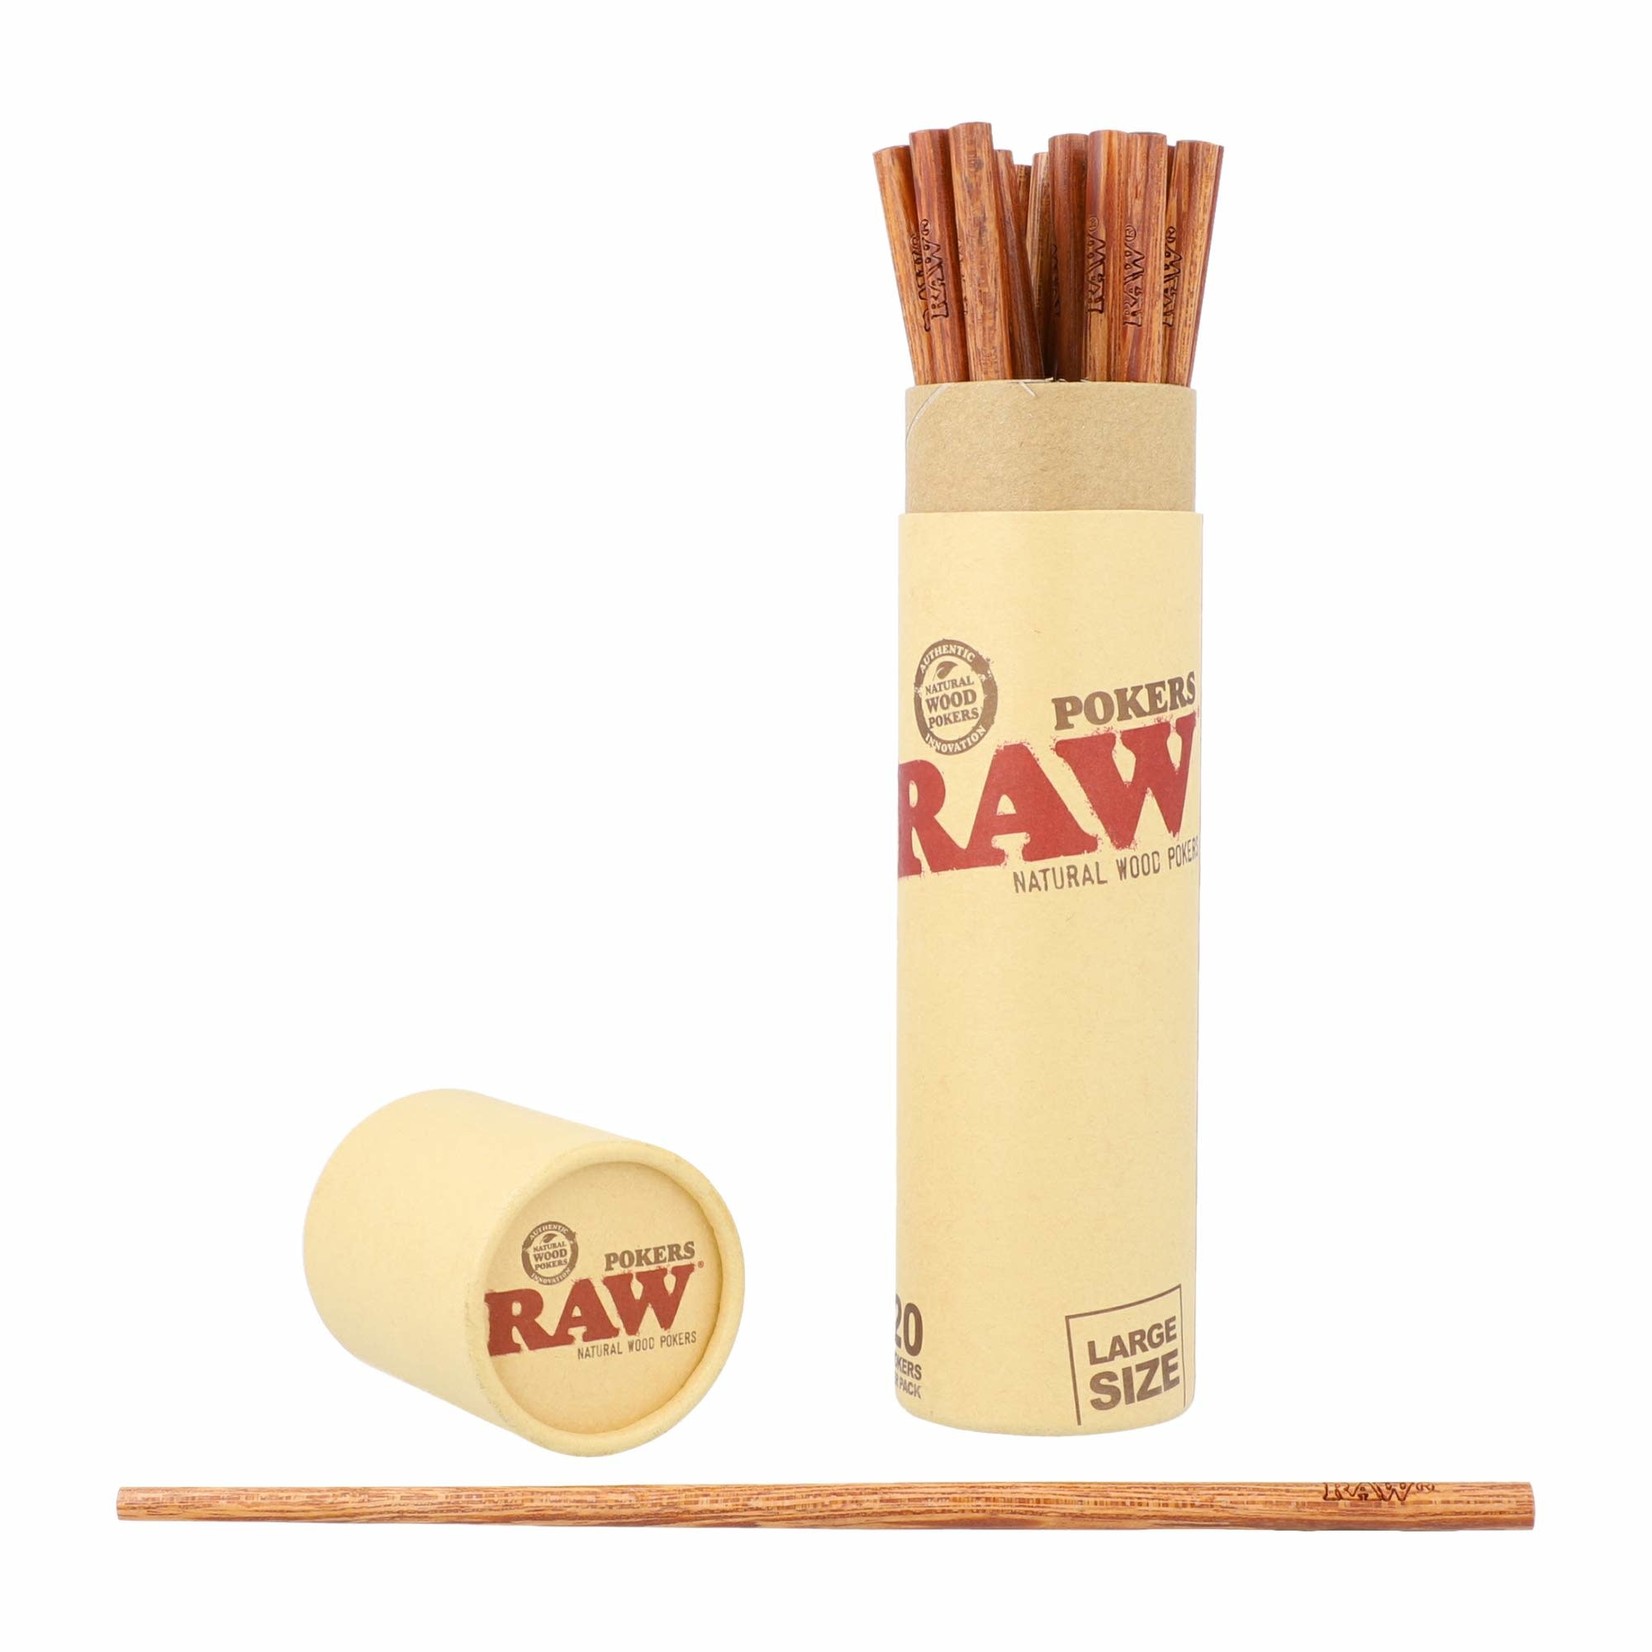 RAW RAW Natural Wood Poker